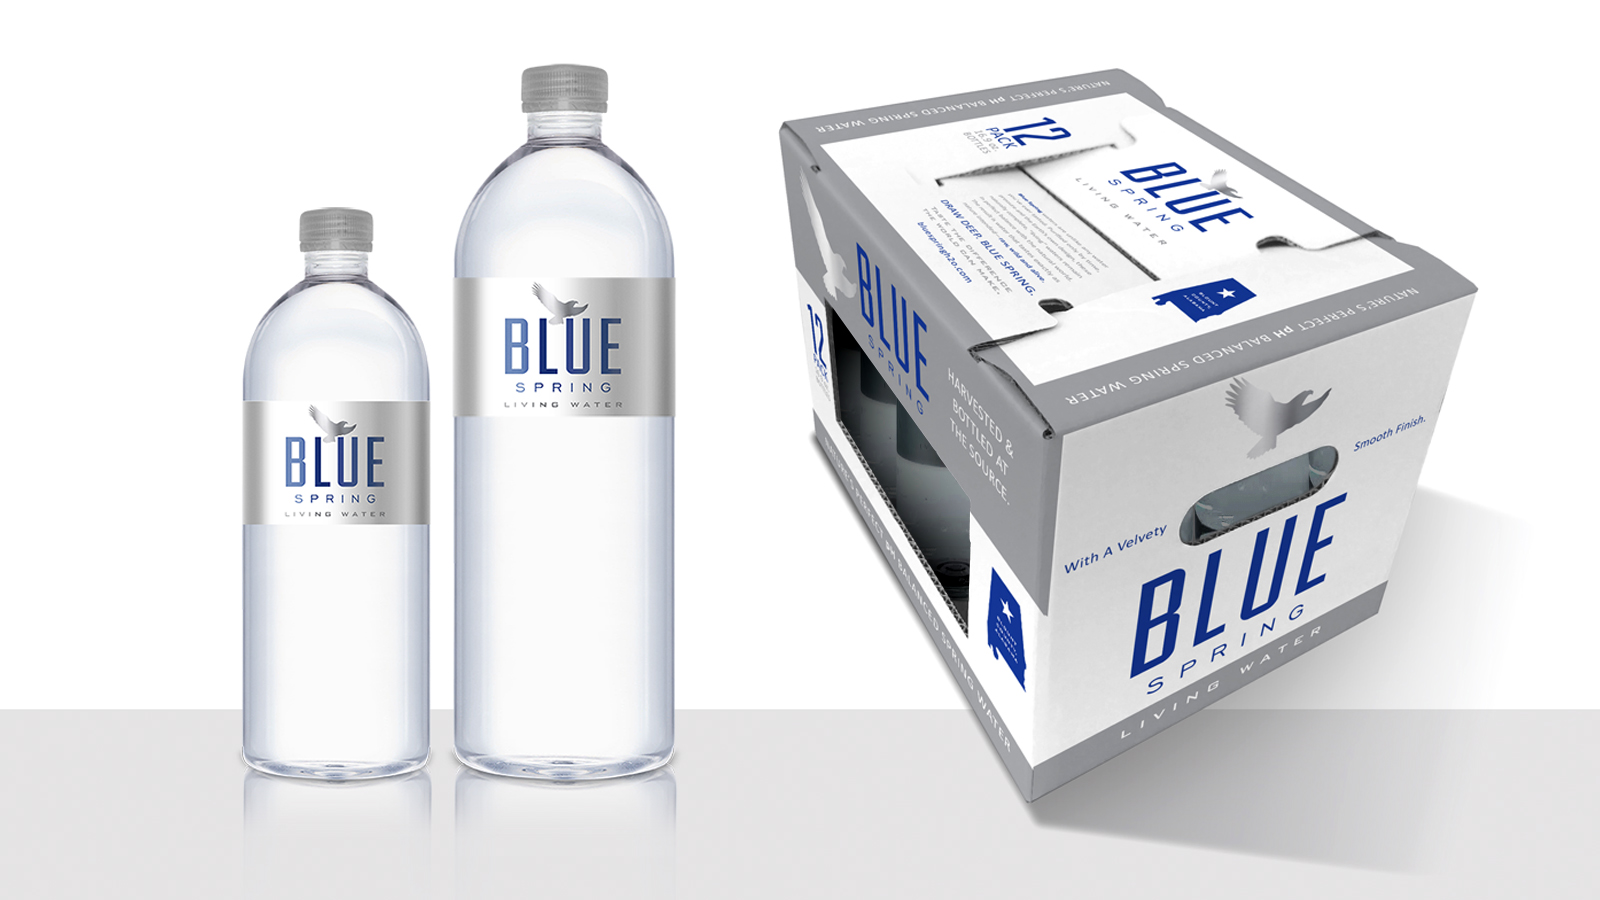 Blue Spring Living Water packaging